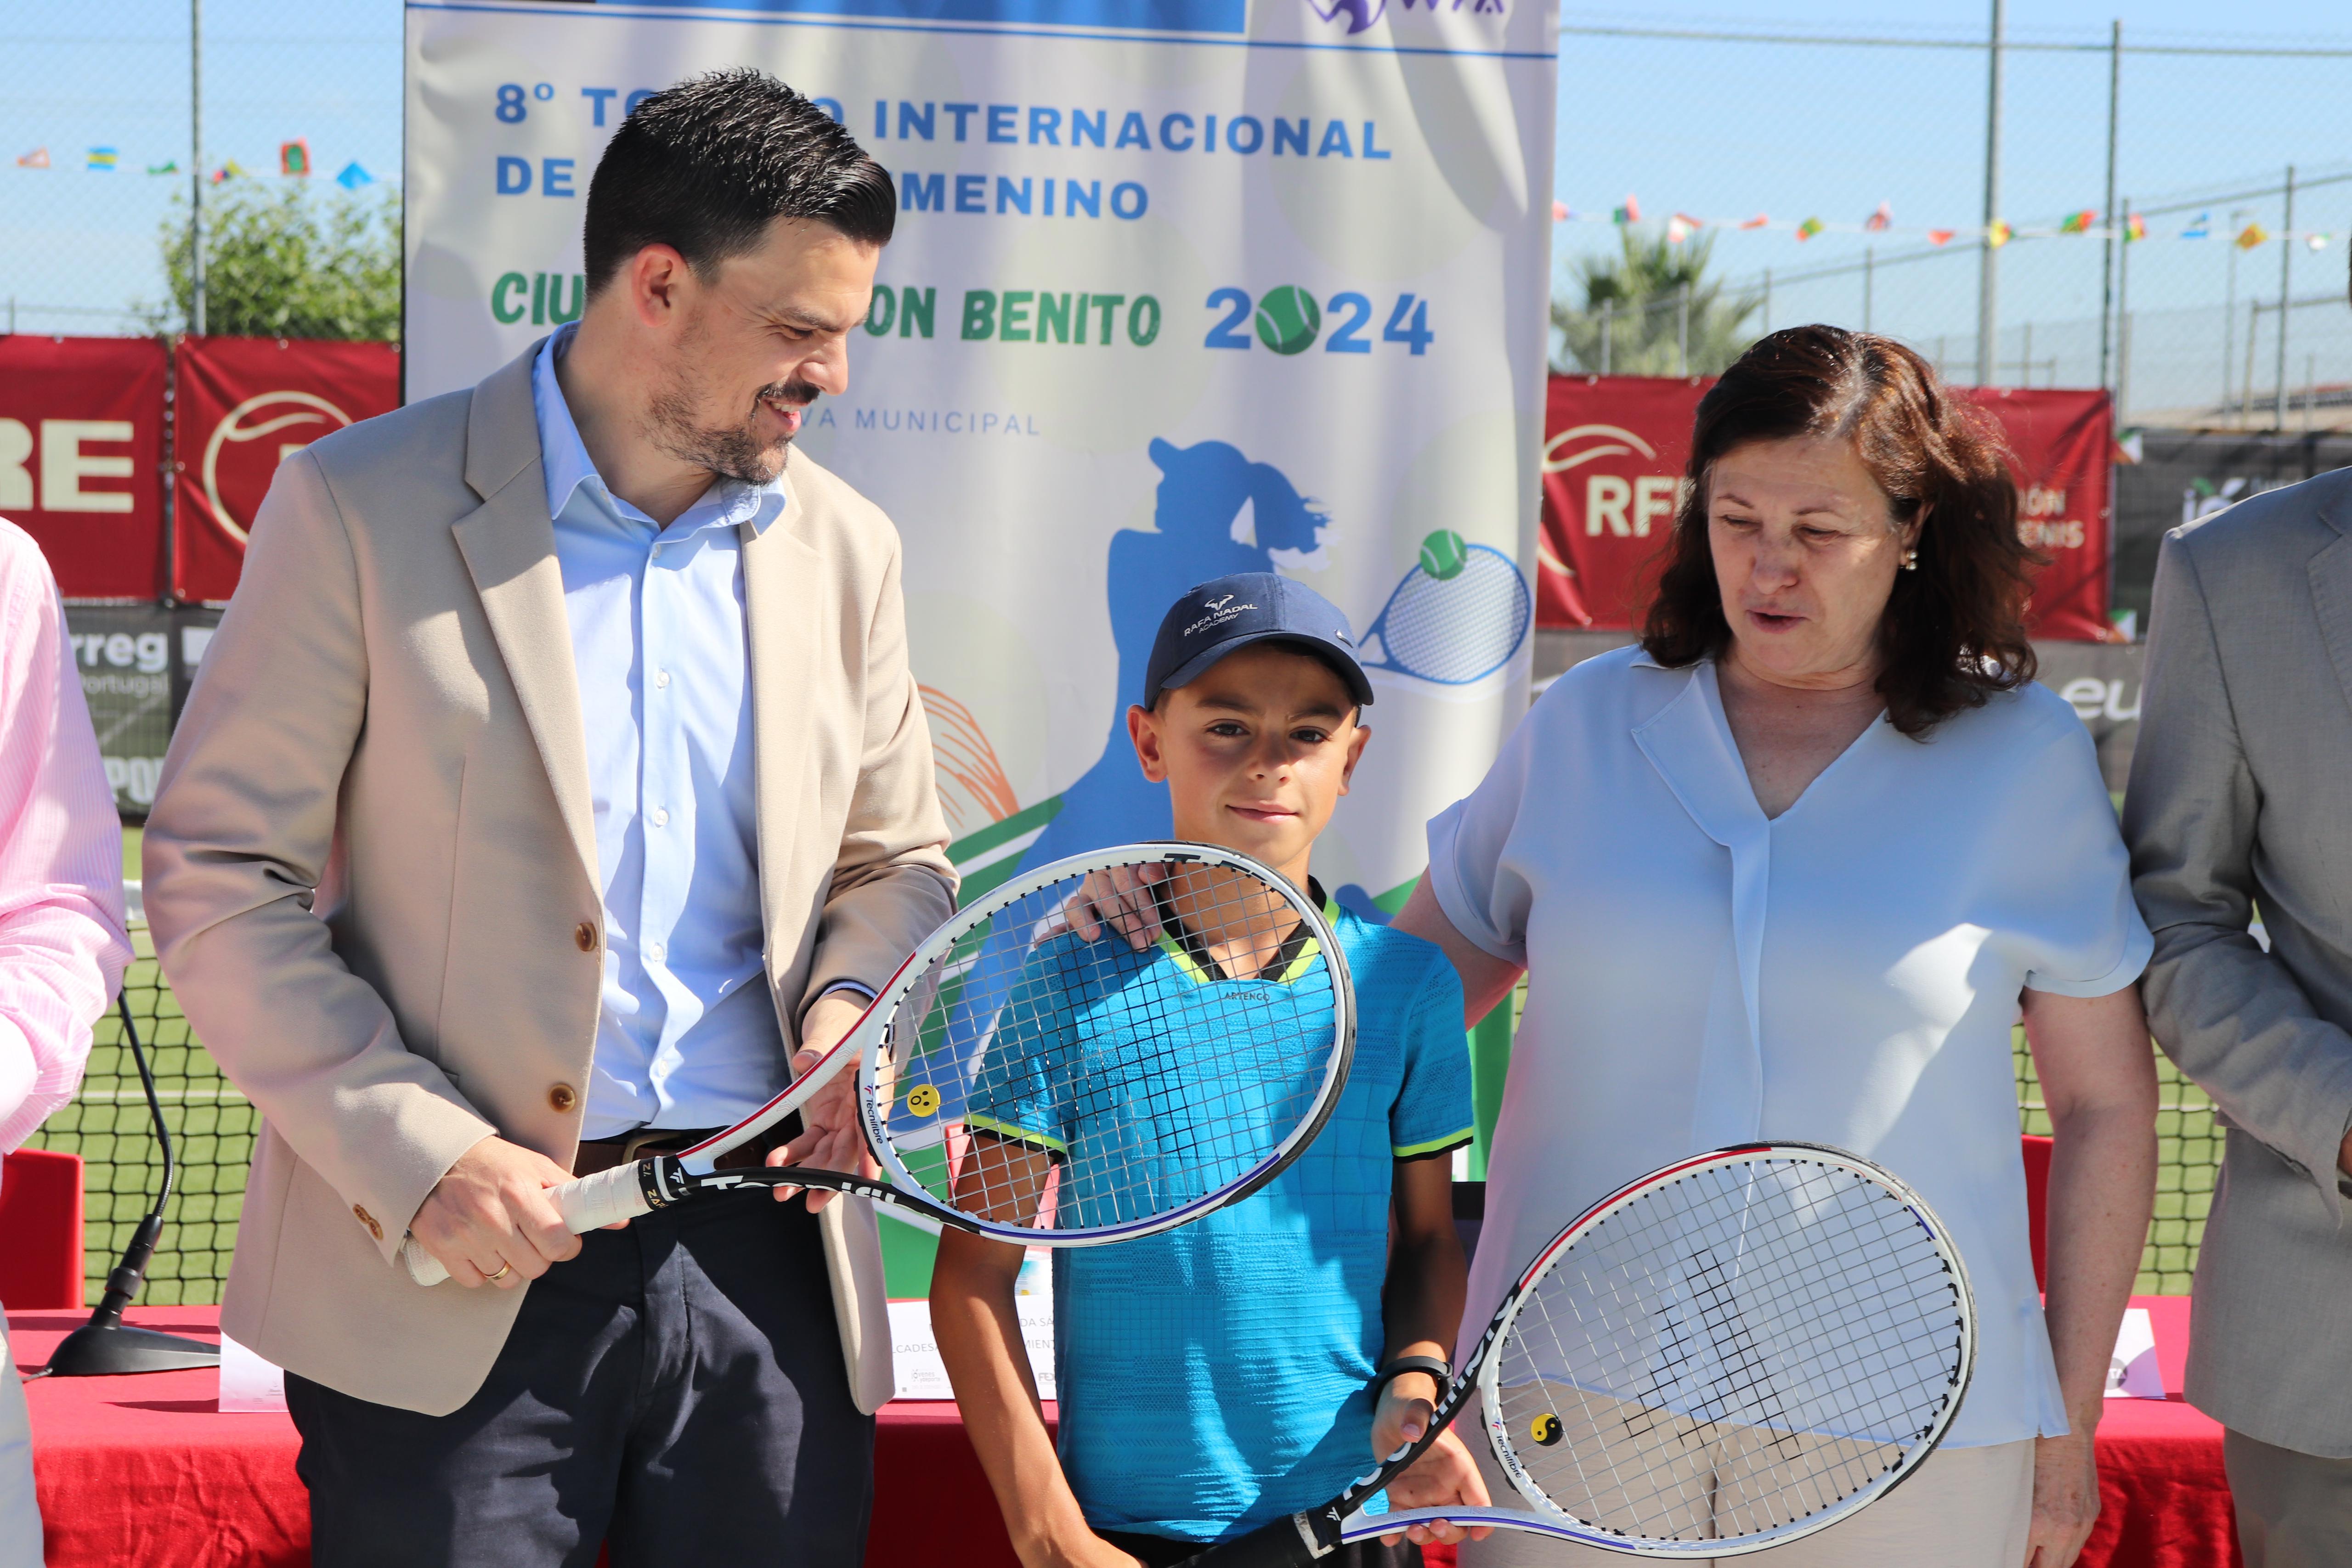 Image 7 of article La Junta de Extremadura apoya el VIII Torneo Internacional de Tenis Femenino que se celebrará en Don Benito del 6 al 14 de julio